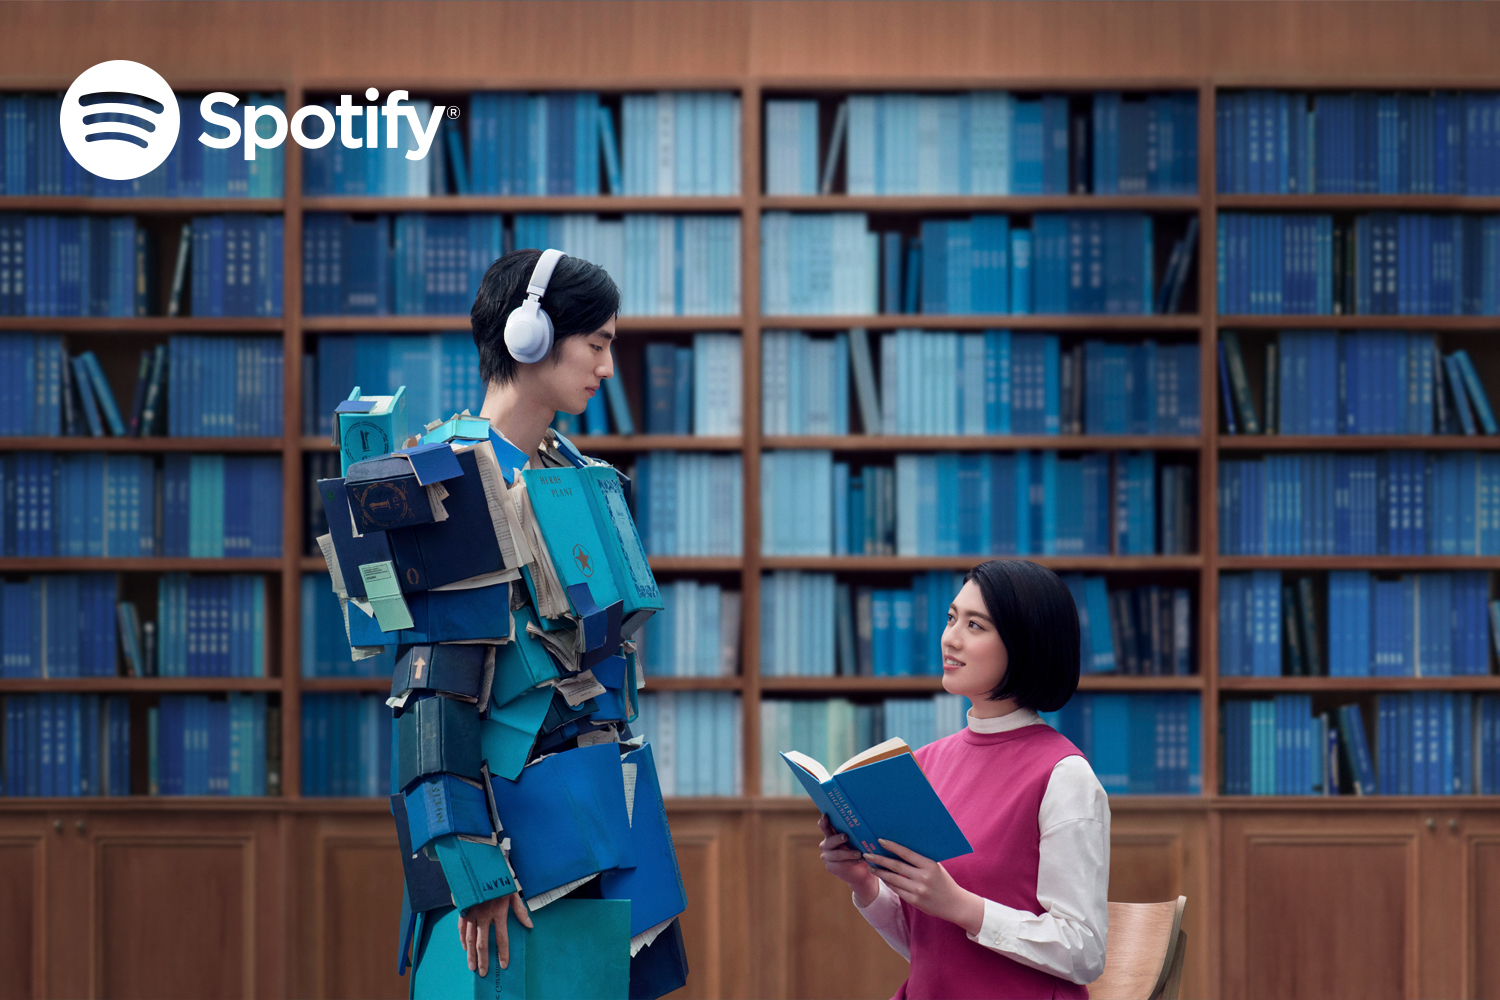 Spotifyの新ブランドCM「今のサントラ・青春の図書館」